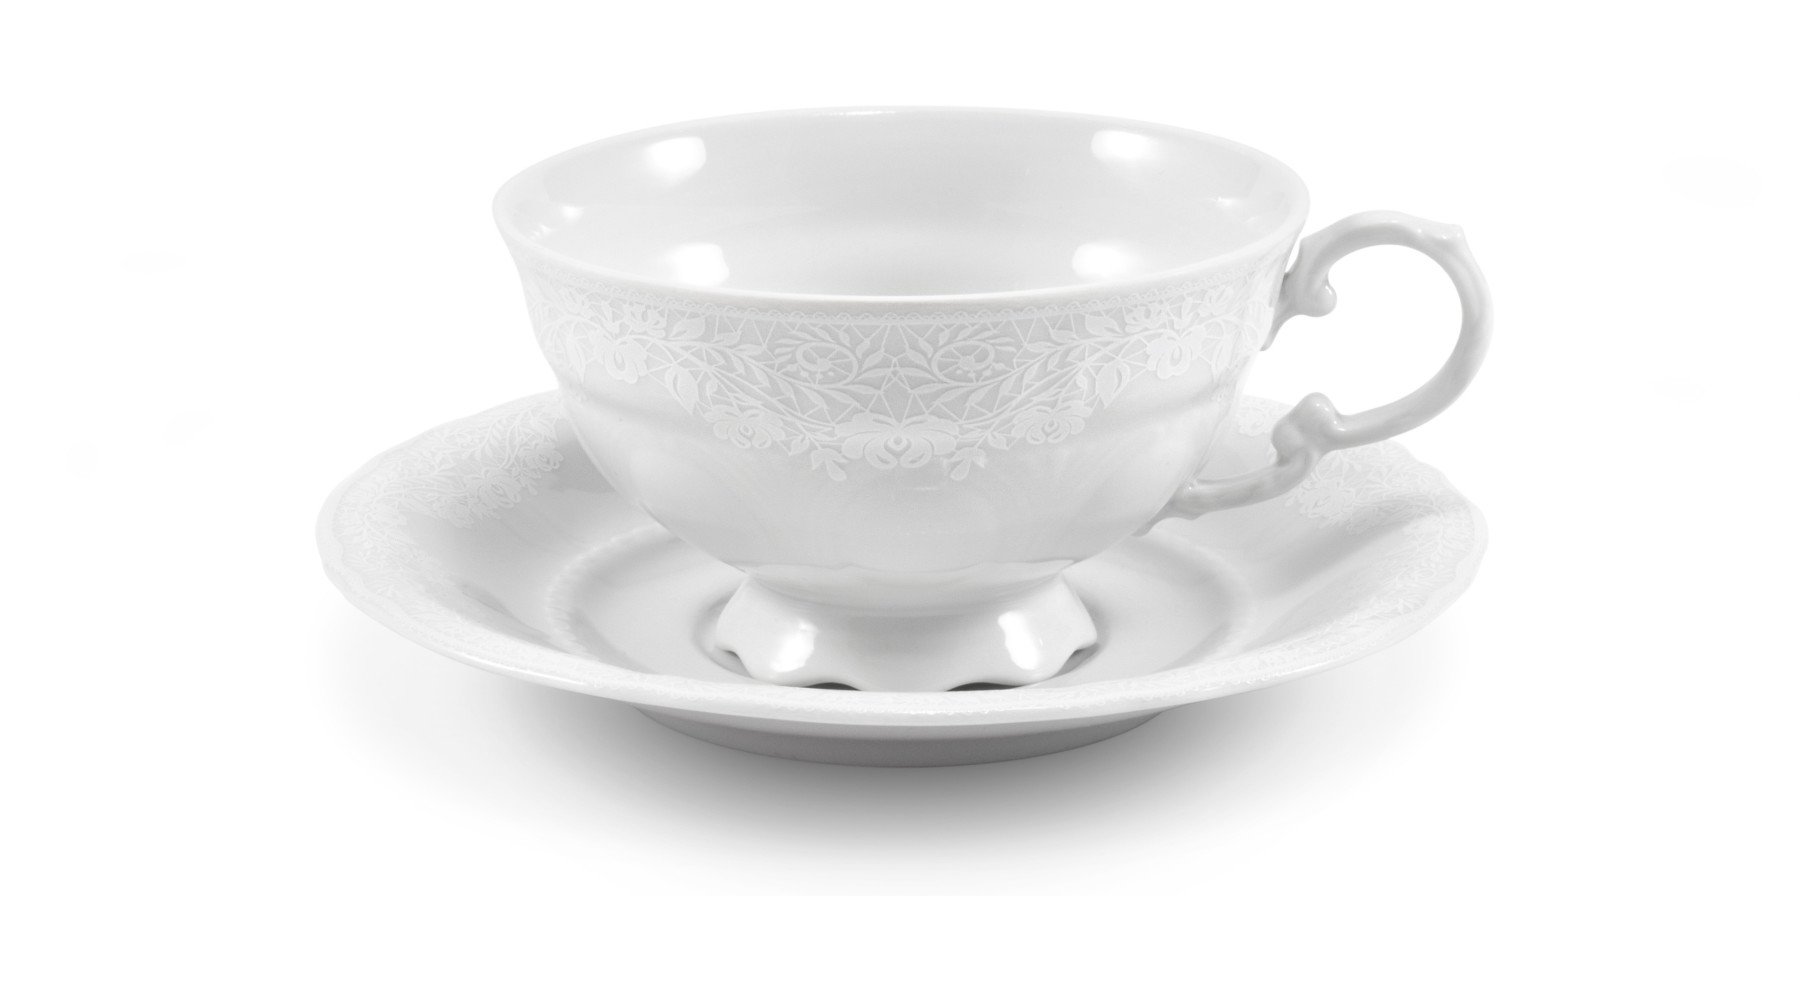 картинка Чайный сервиз 6 персон Соната, Белый узор 07160725-3001 Leander от интернет-магазина Leander Serviz